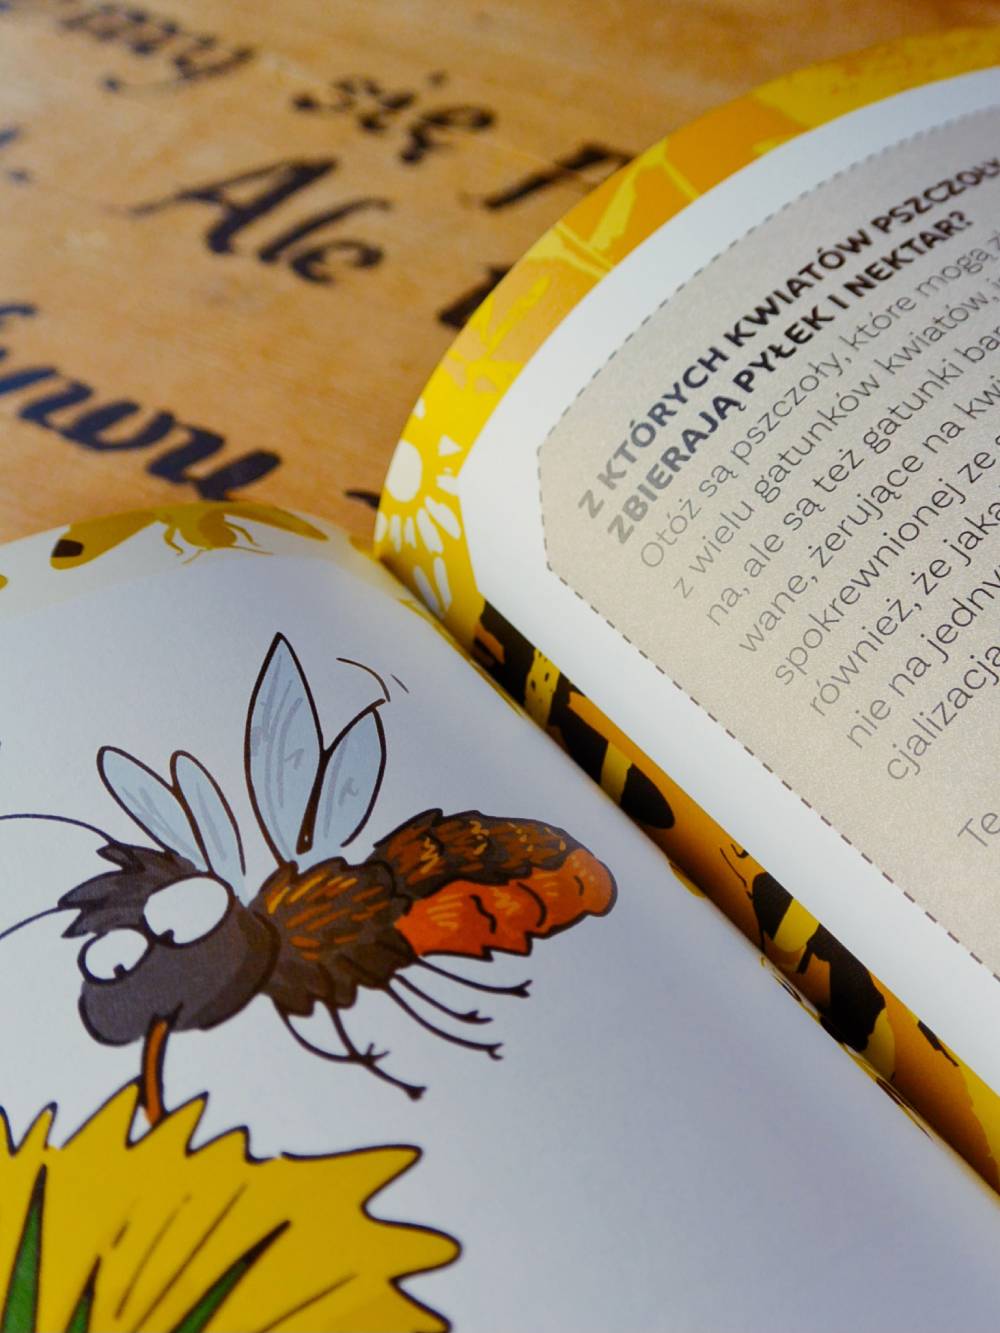 książka pszczoły miodne i niemiodne